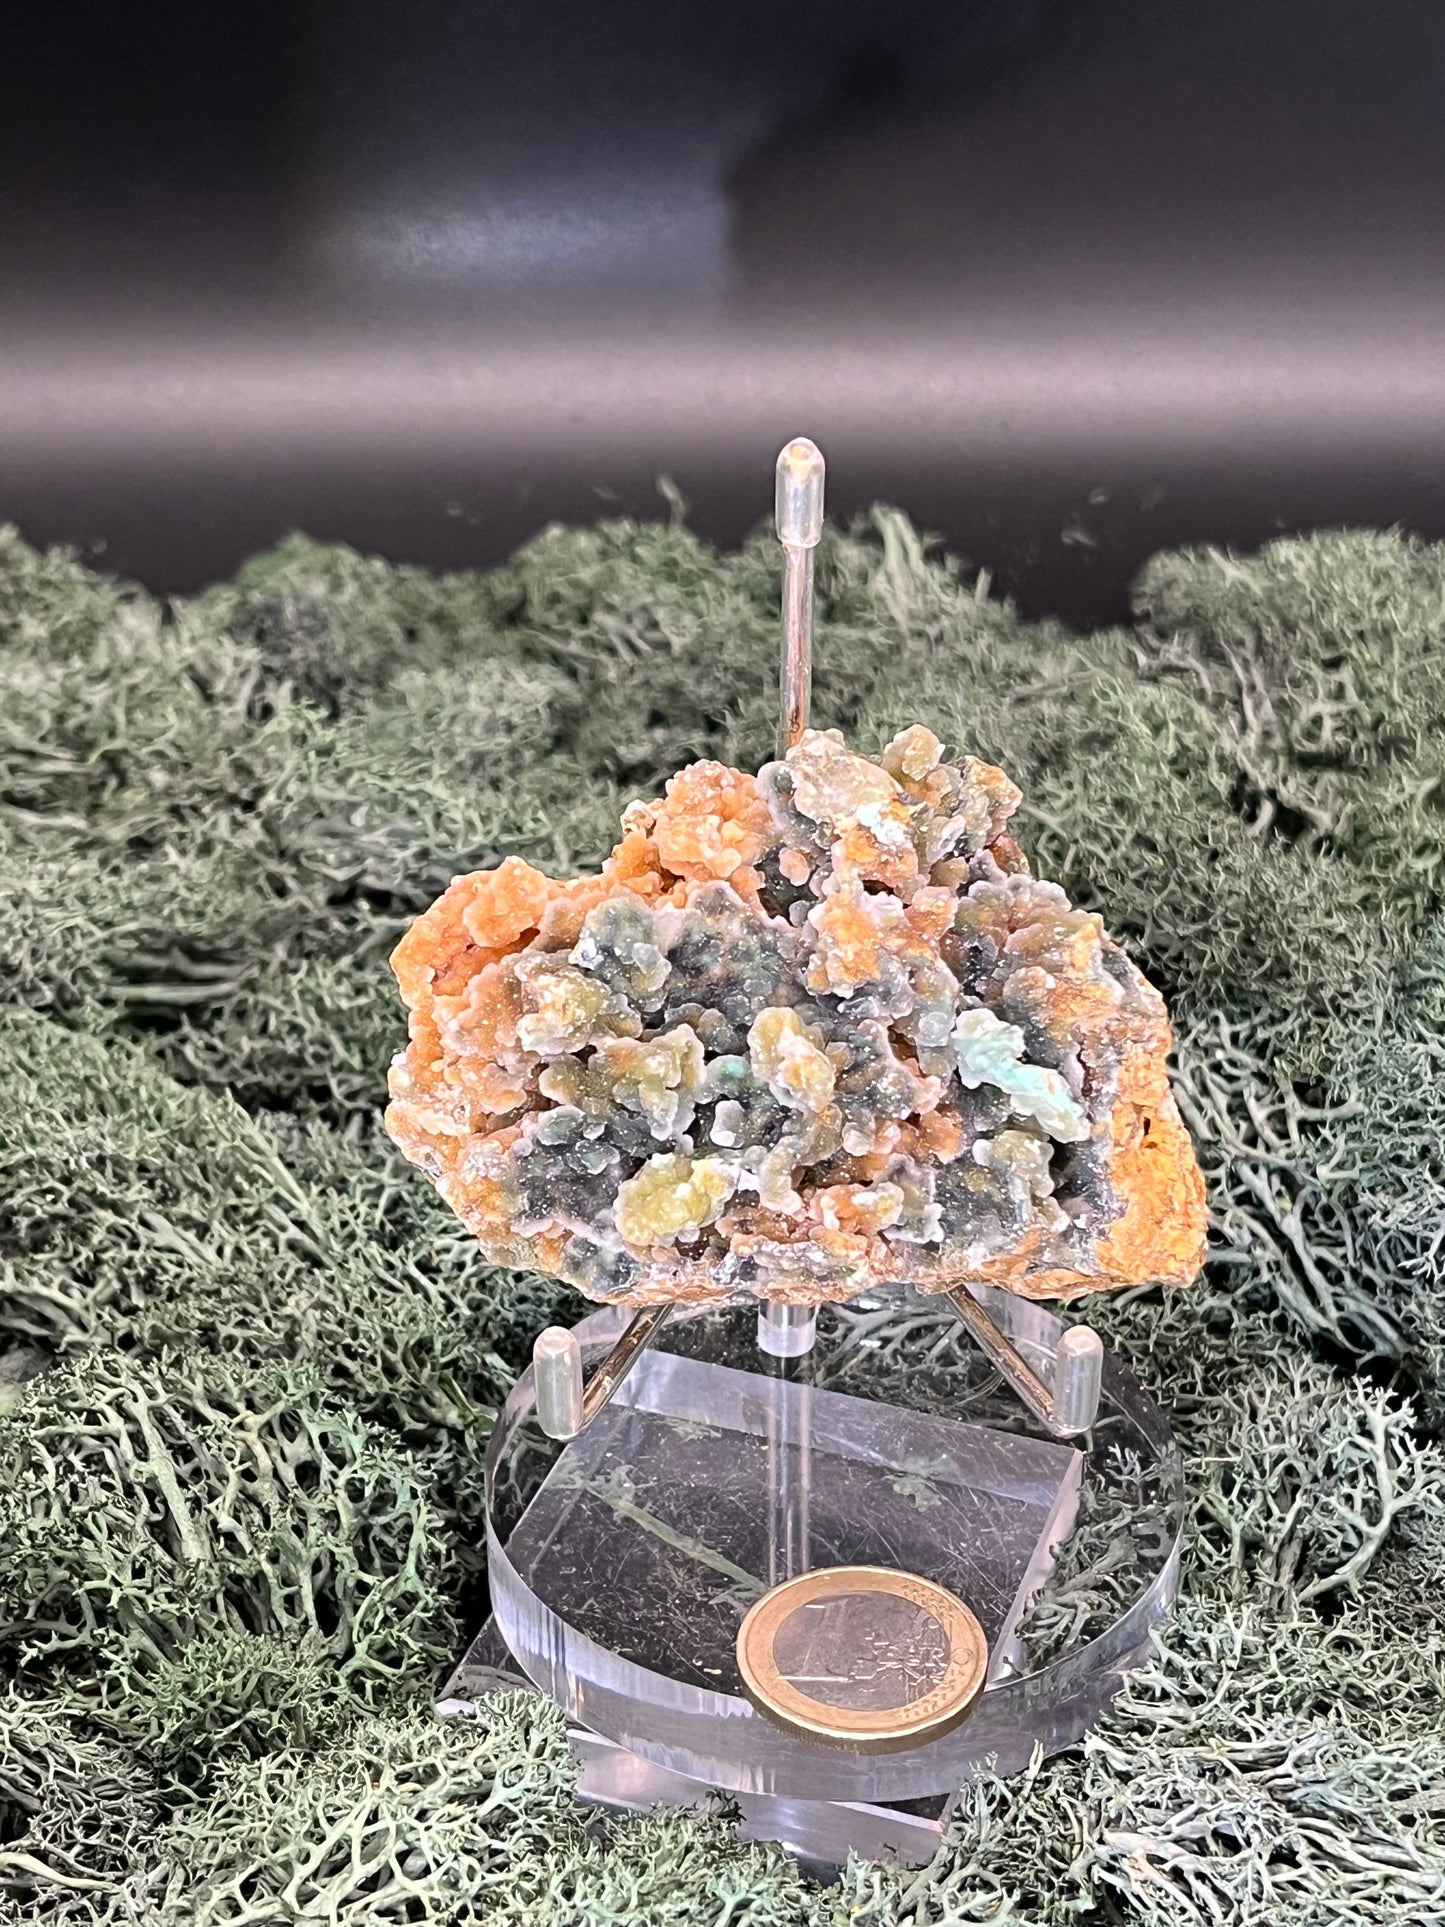 Smithsonit aus Indonesien (149g) - Stufe - glitzernde grüne Kristalle in Traubenform